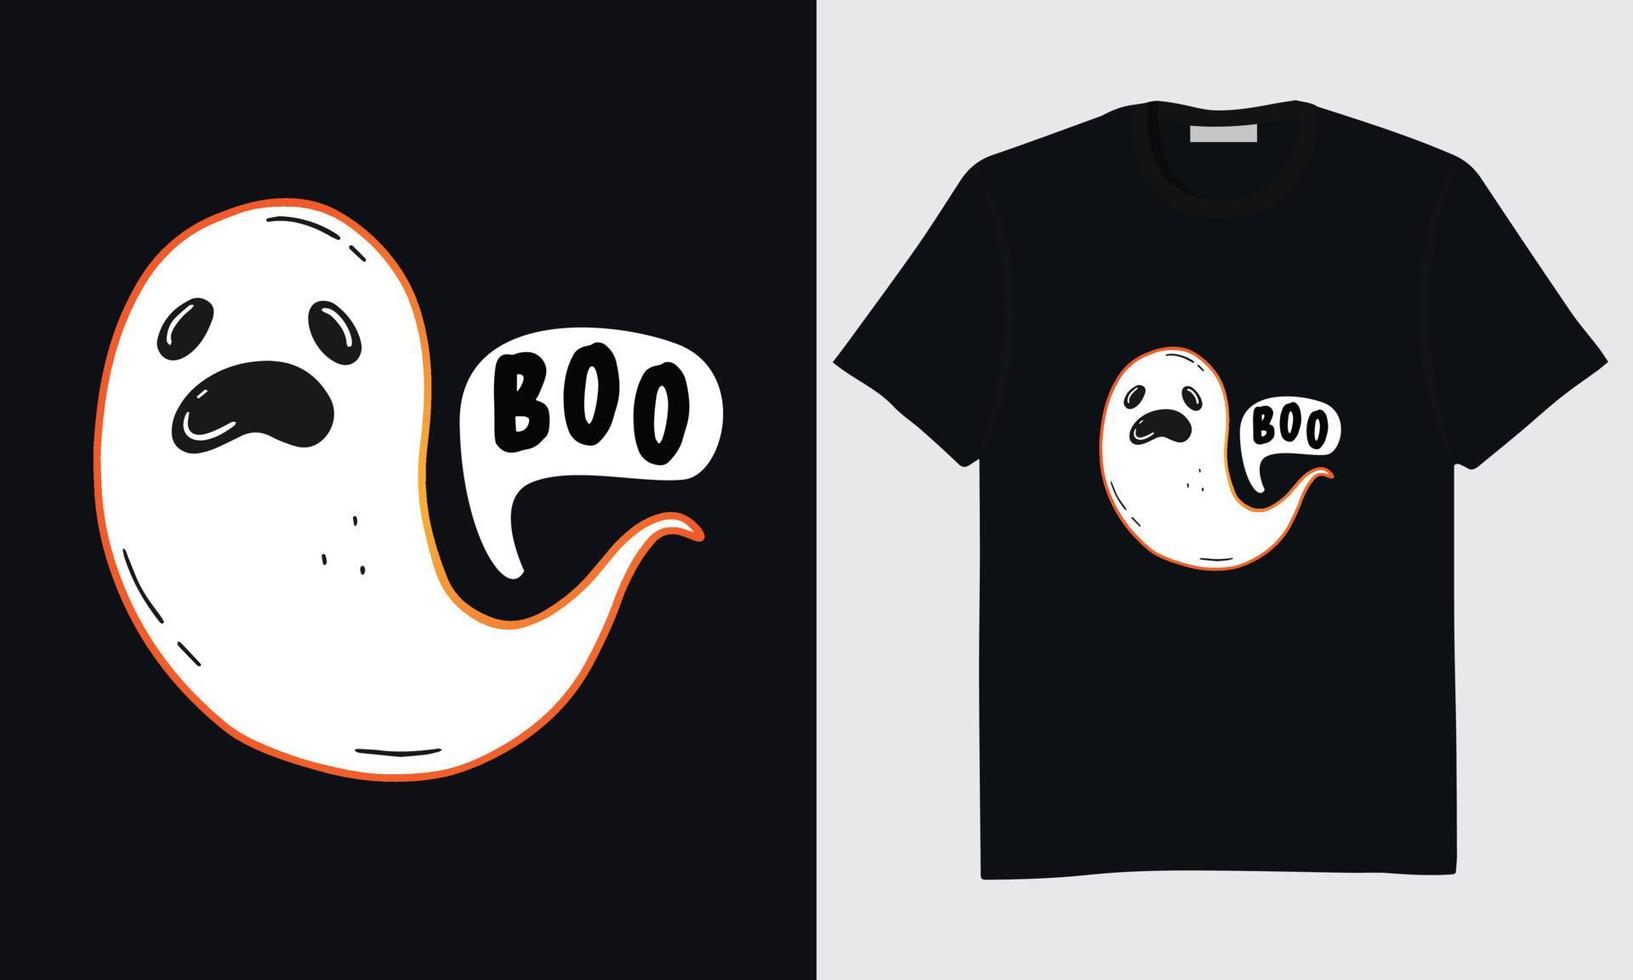 diseño de camisetas de halloween, diseño de camisetas de halloween feliz, diseño de camisetas de halloween de moda, mejor diseño de camisetas de halloween, arte vectorial de camisetas de halloween vector